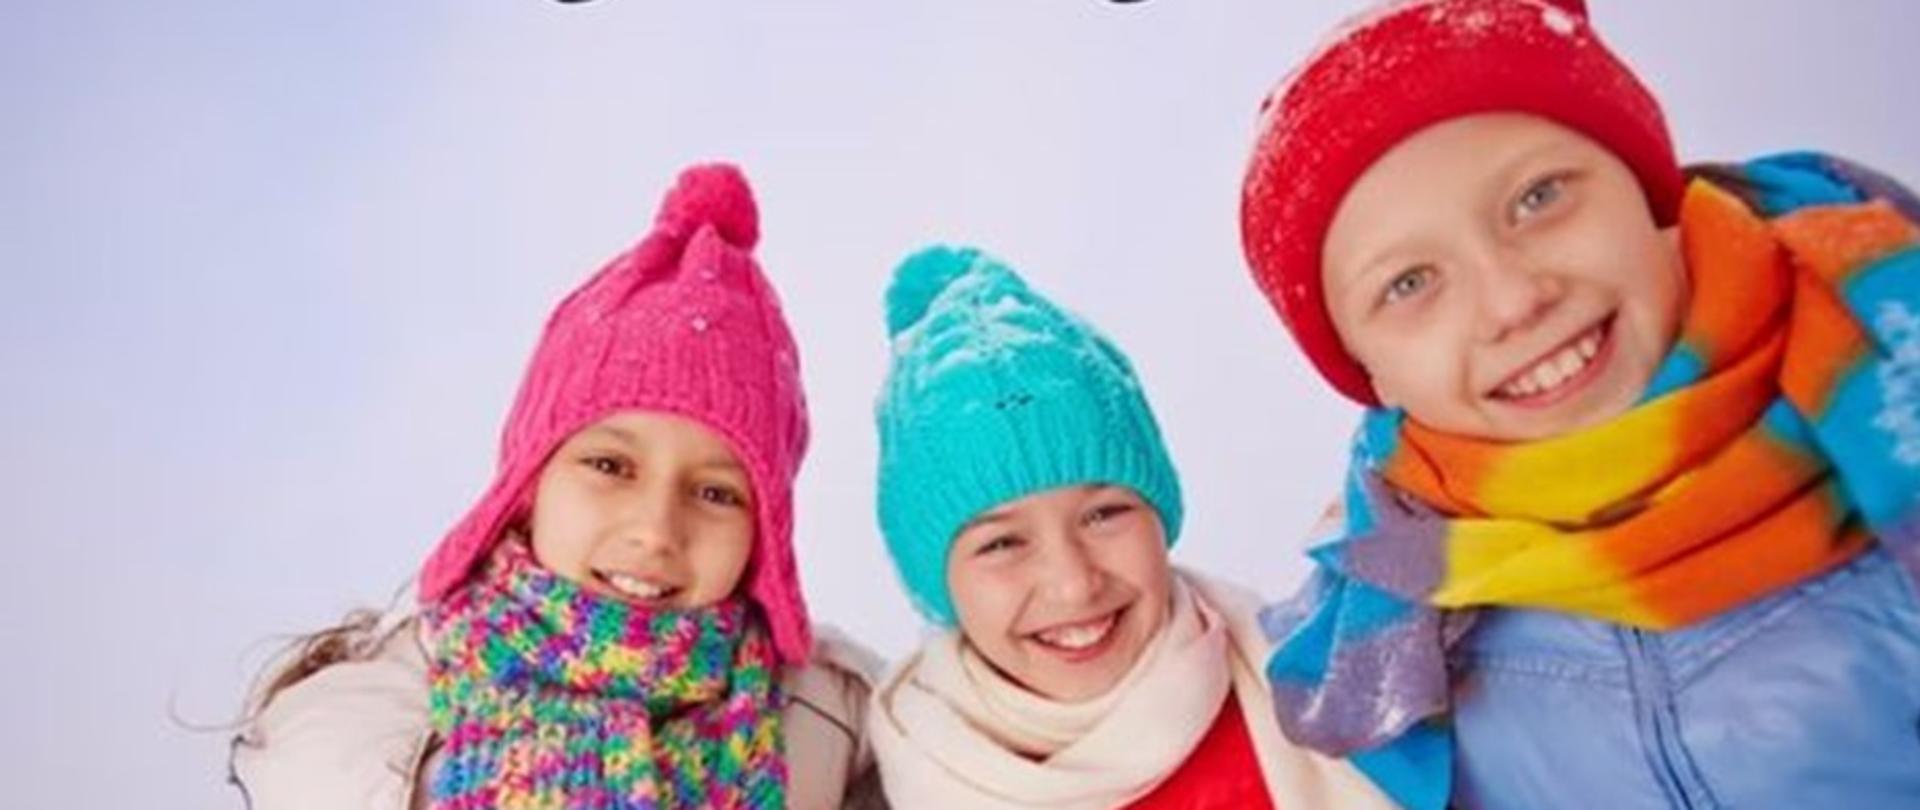 logotyp Państwowej Inspekcji Sanitarnej, hasło POD OKIEM SANEPIDU zaczynamy ferie, troje uśmiechniętych dzieci w zimowych czapkach i kurtkach